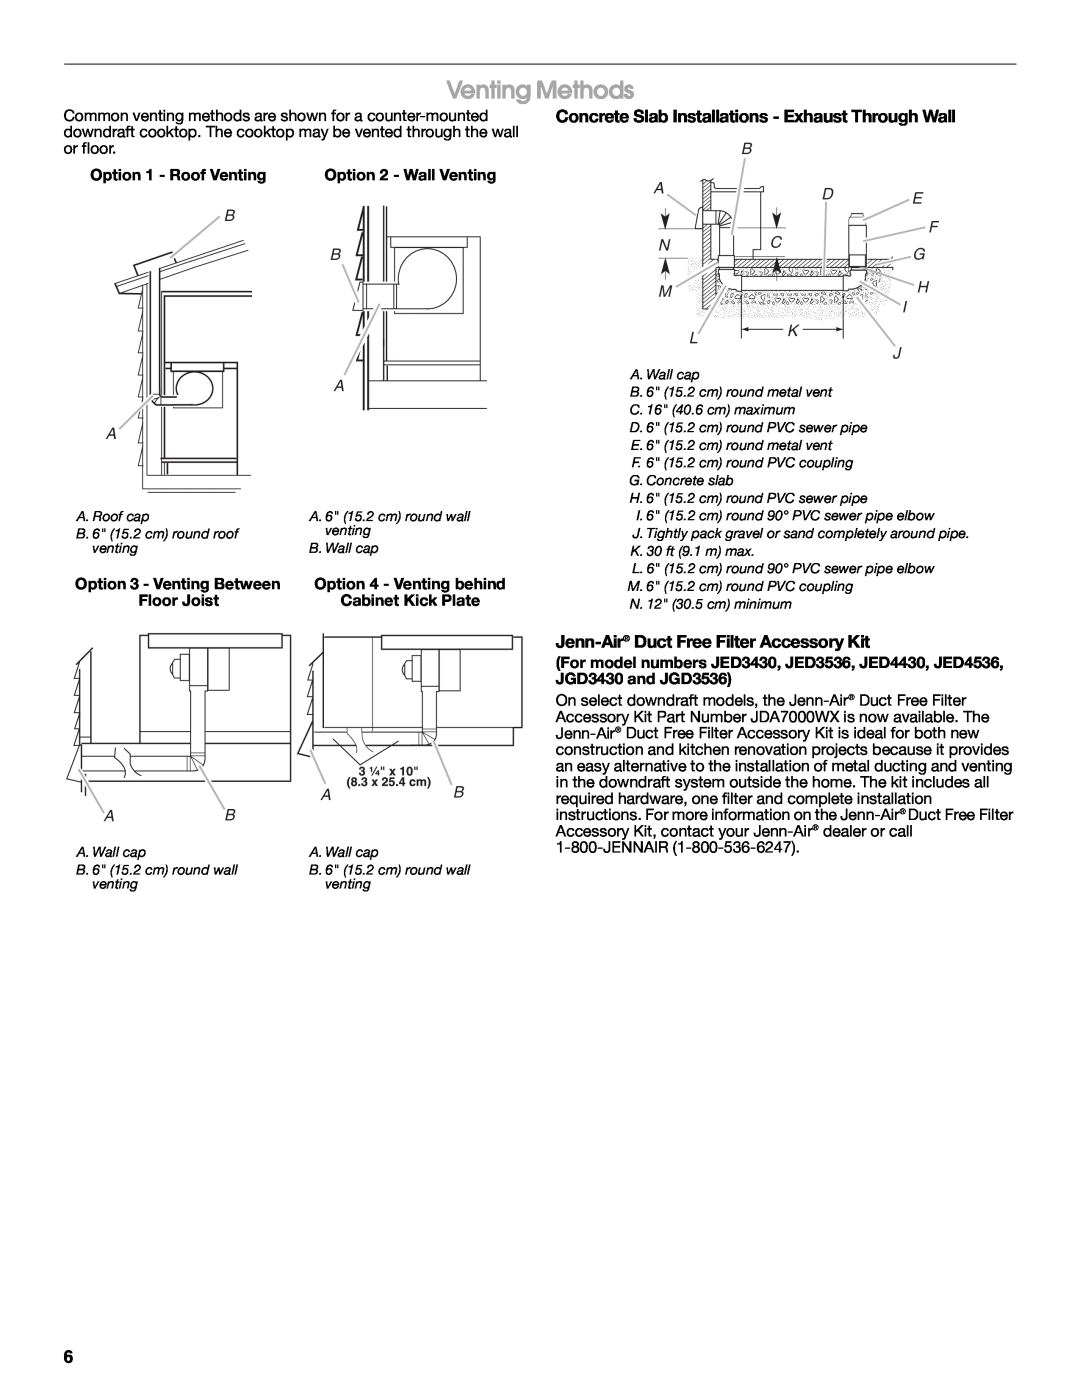 Jenn-Air W10197059B Venting Methods, Concrete Slab Installations - Exhaust Through Wall, B Ad Nc M, E F G H I J 